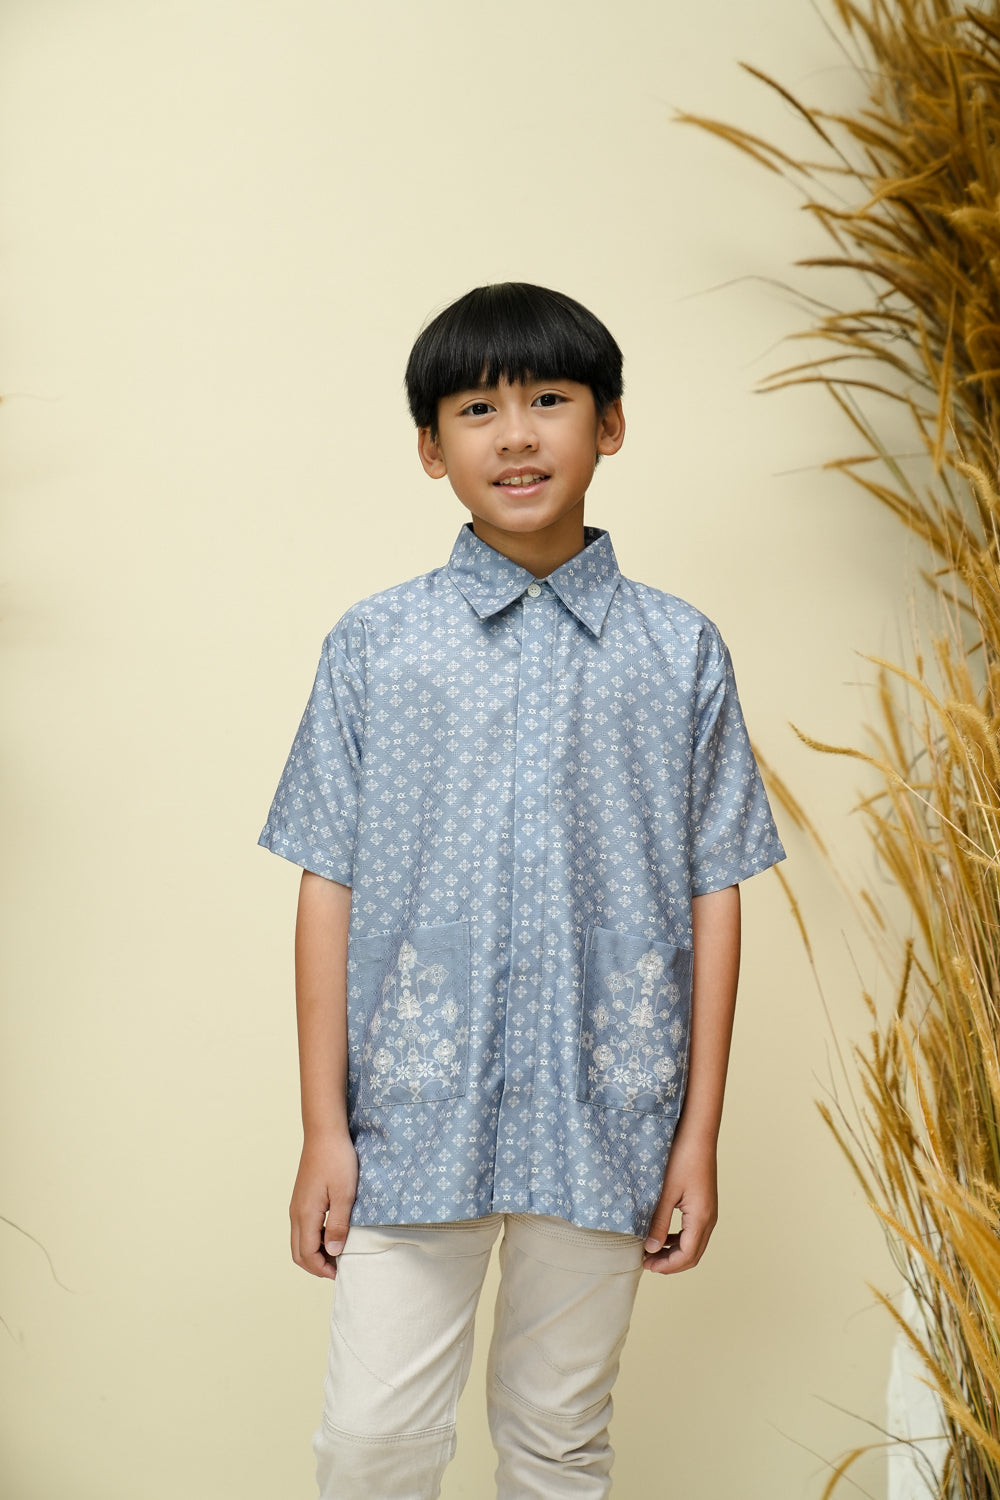 Dumai Shirt Boy (Minor) Samudra